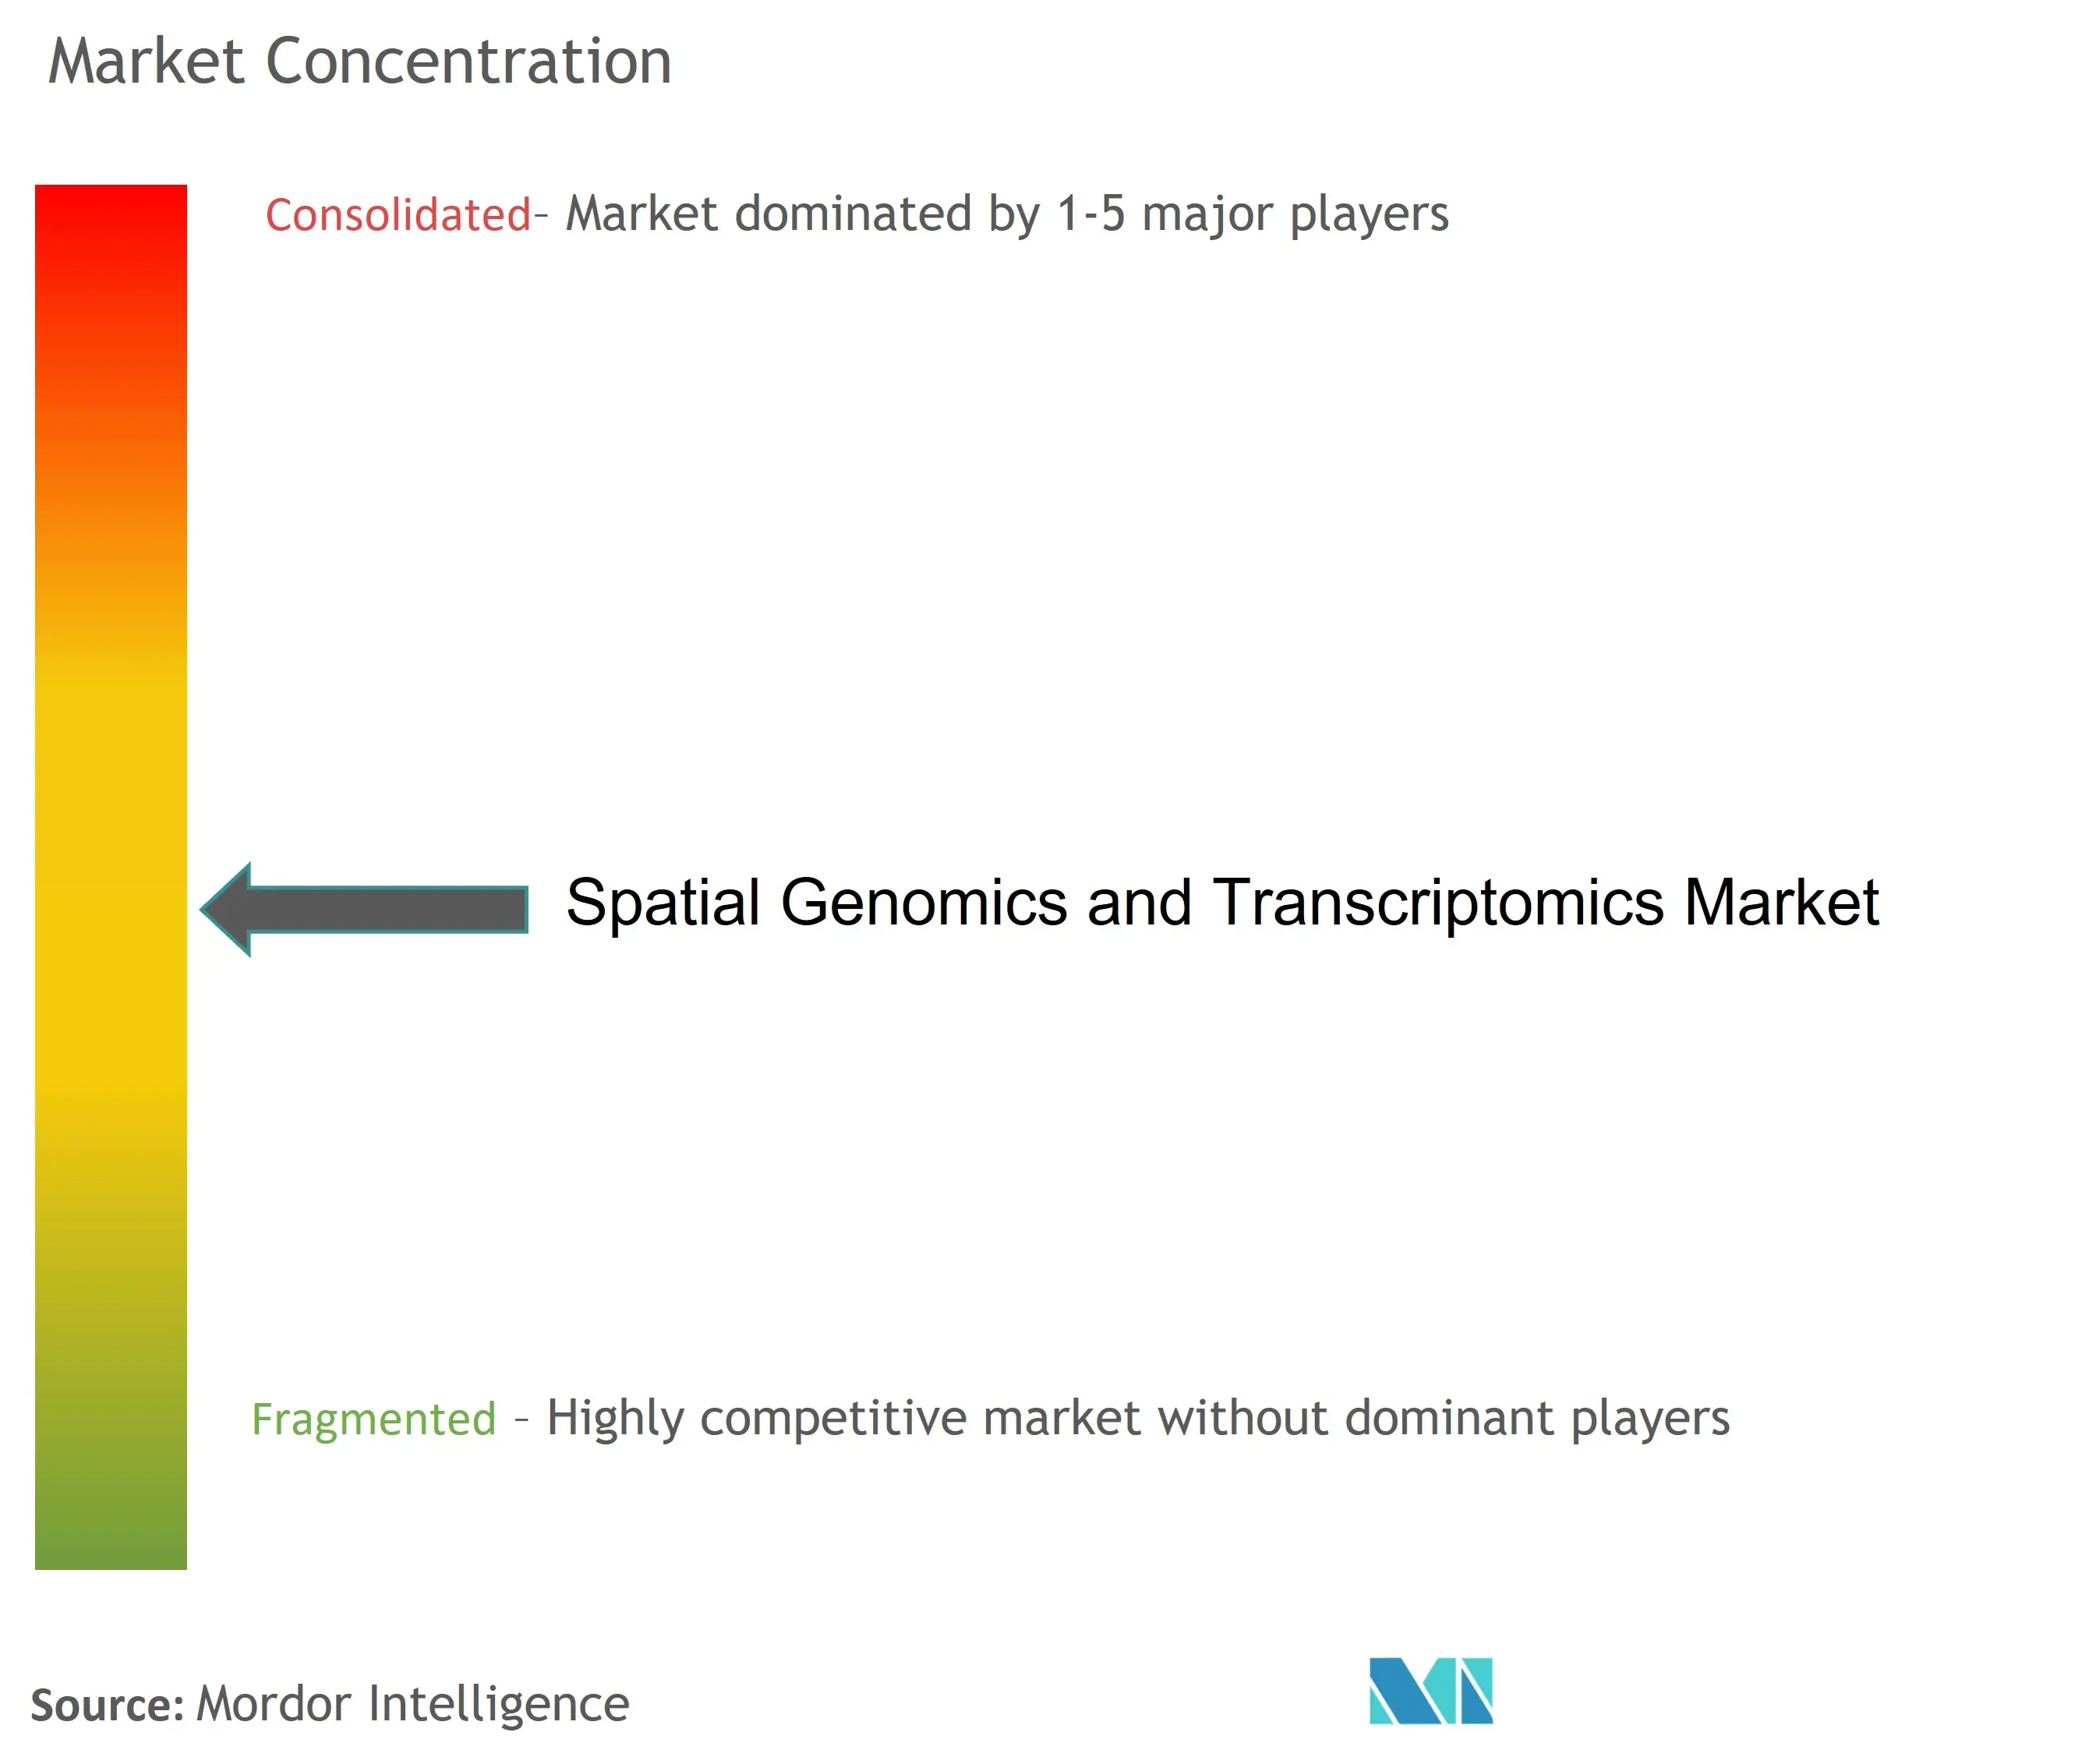 تركيز سوق الجينوم المكاني وعلم النسخ